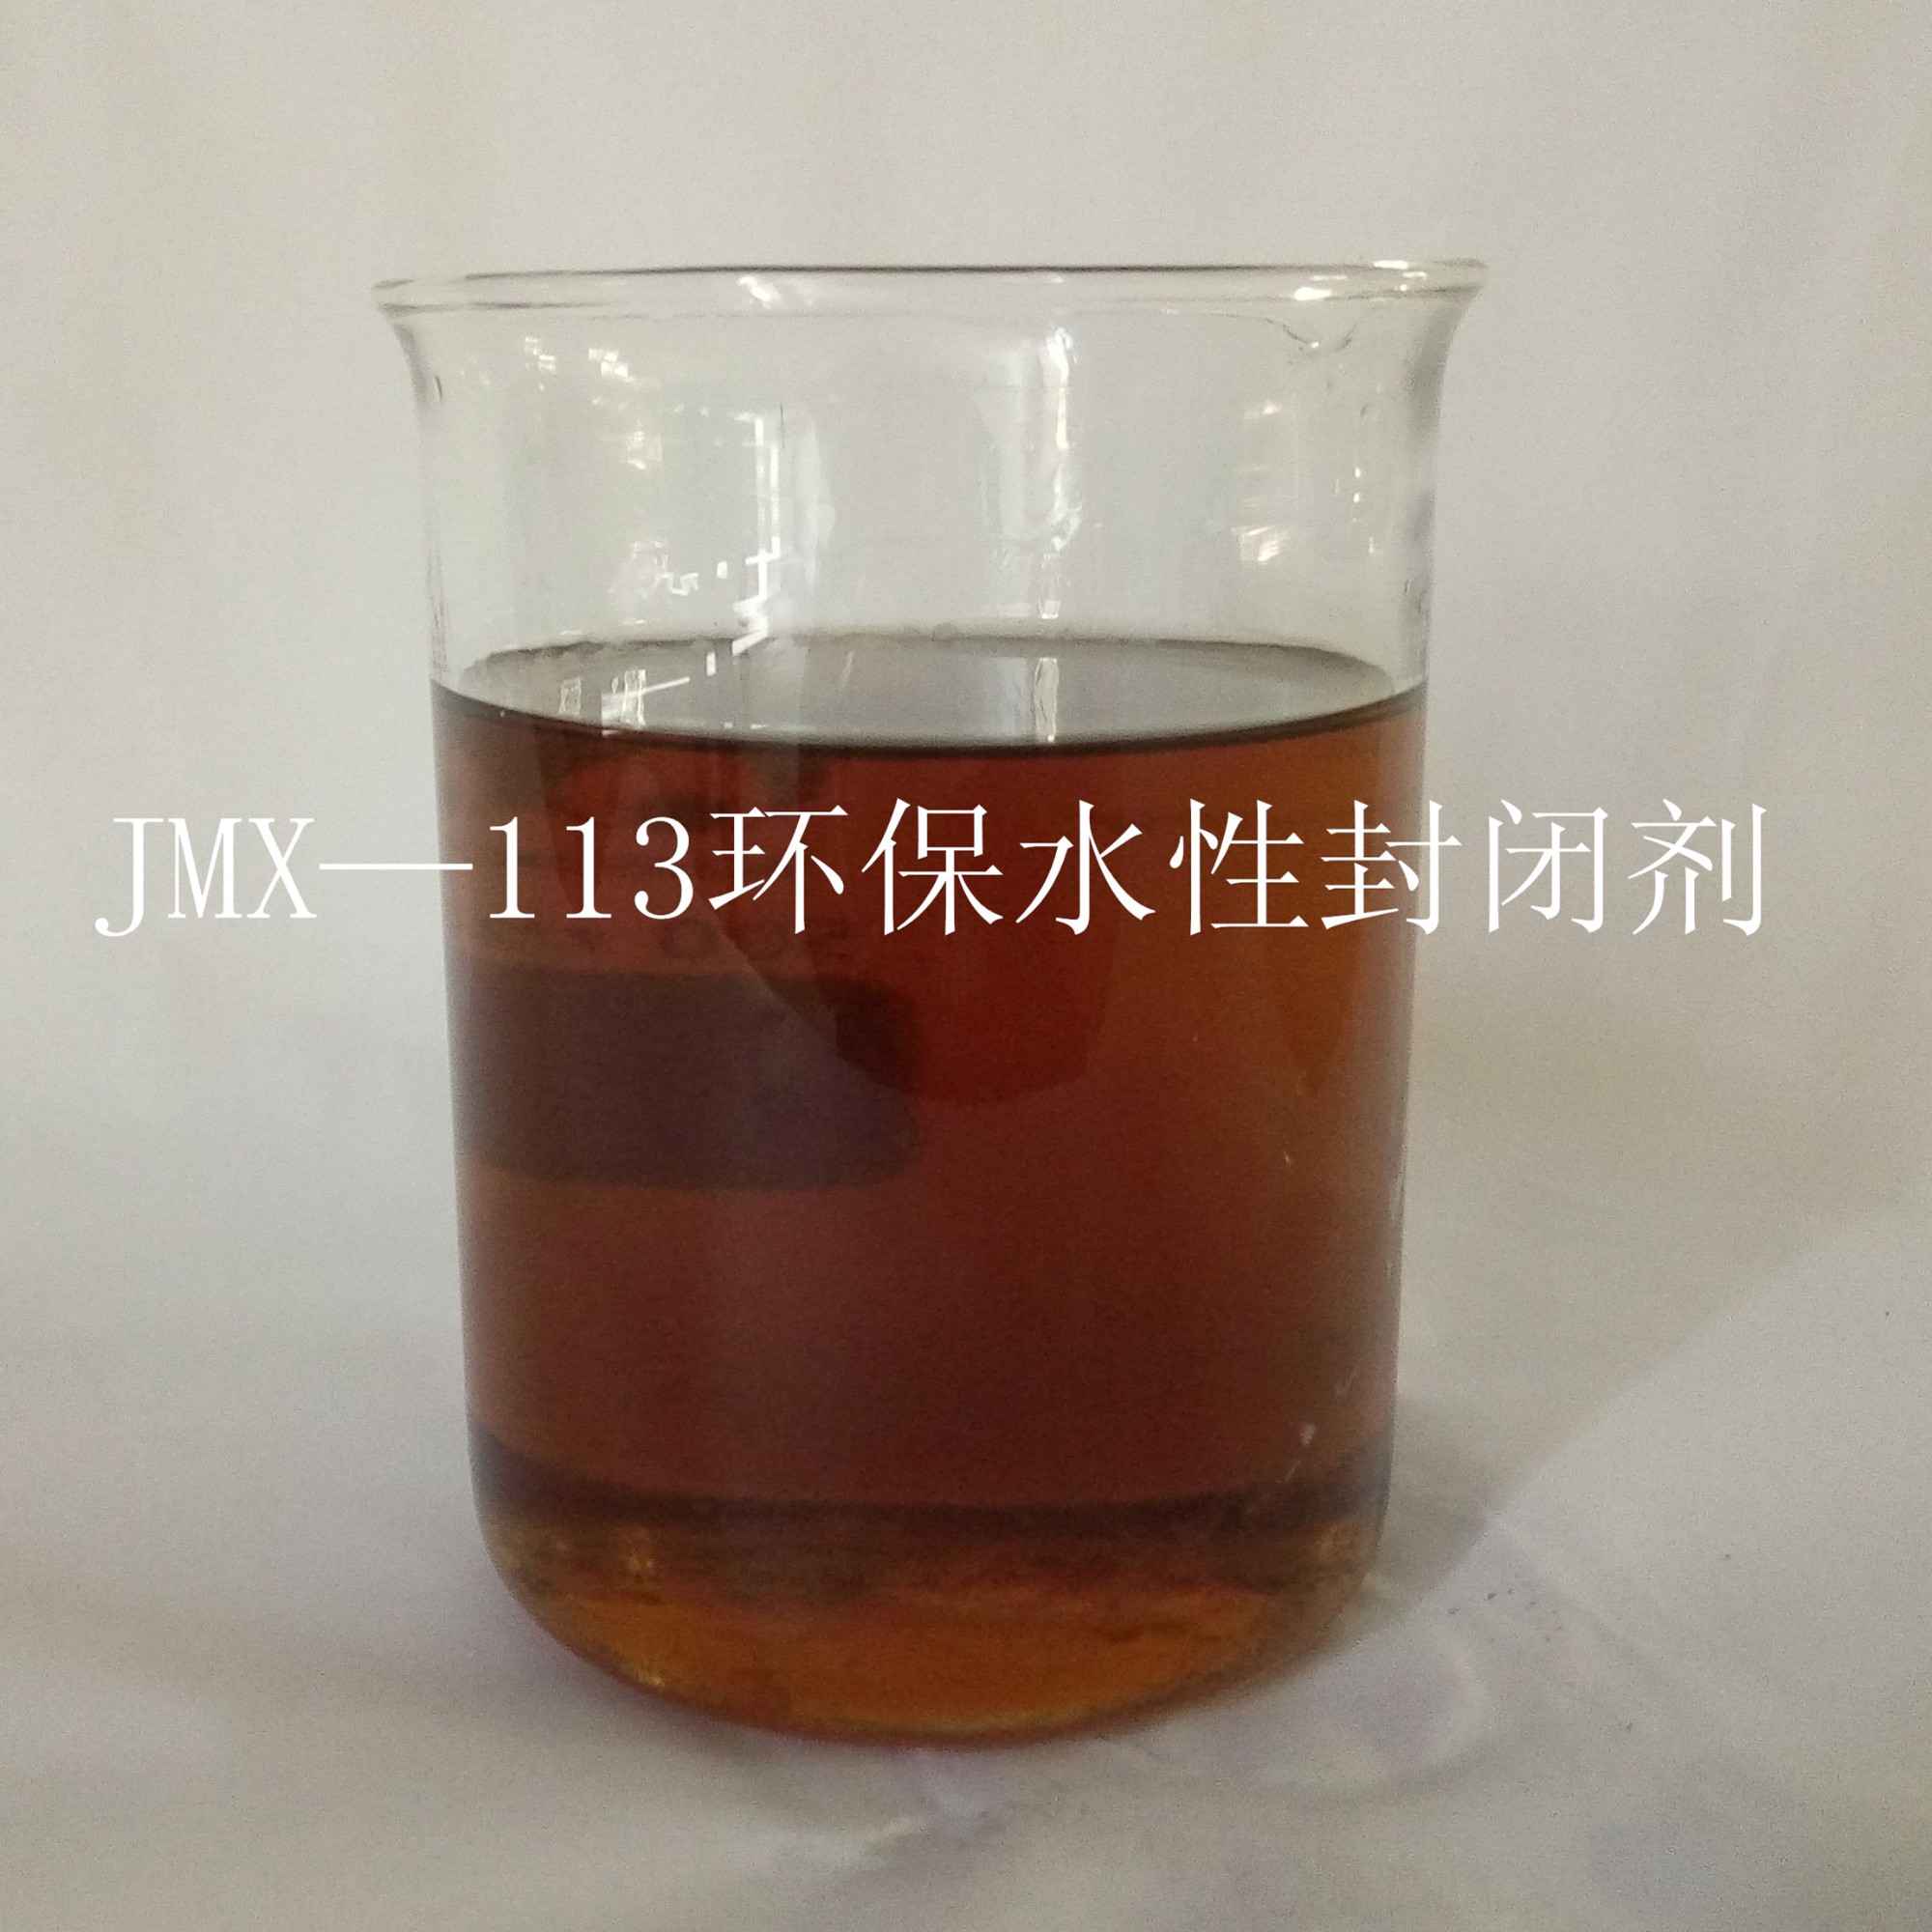 JMX—113环保水性封闭剂